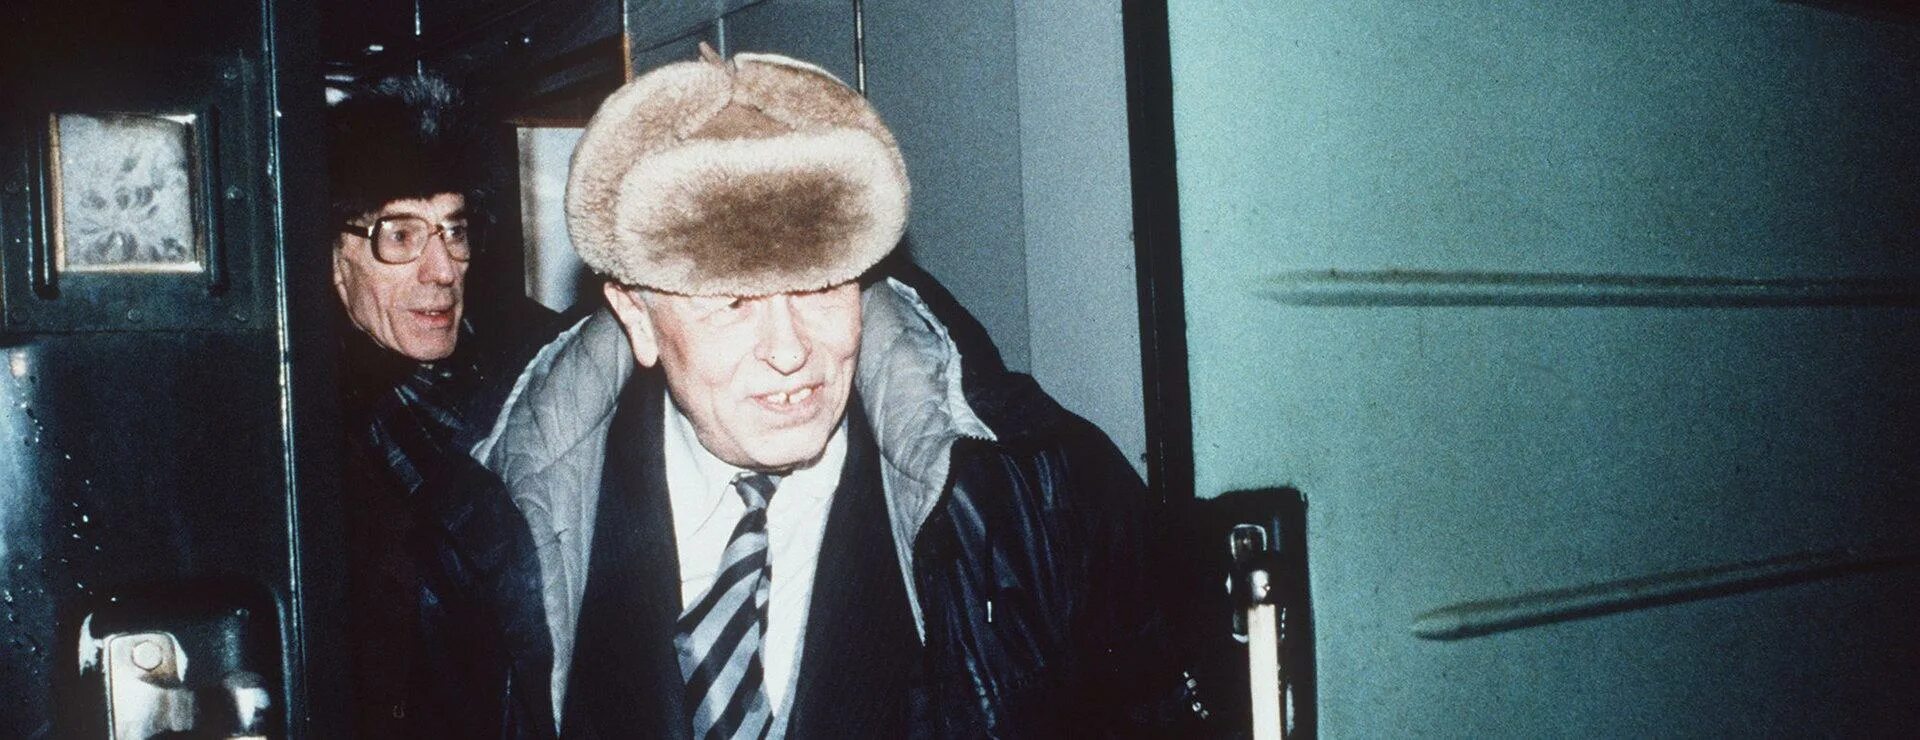 Сахаров 1986. Возвращение Сахарова из ссылки. 29 декабря 1986